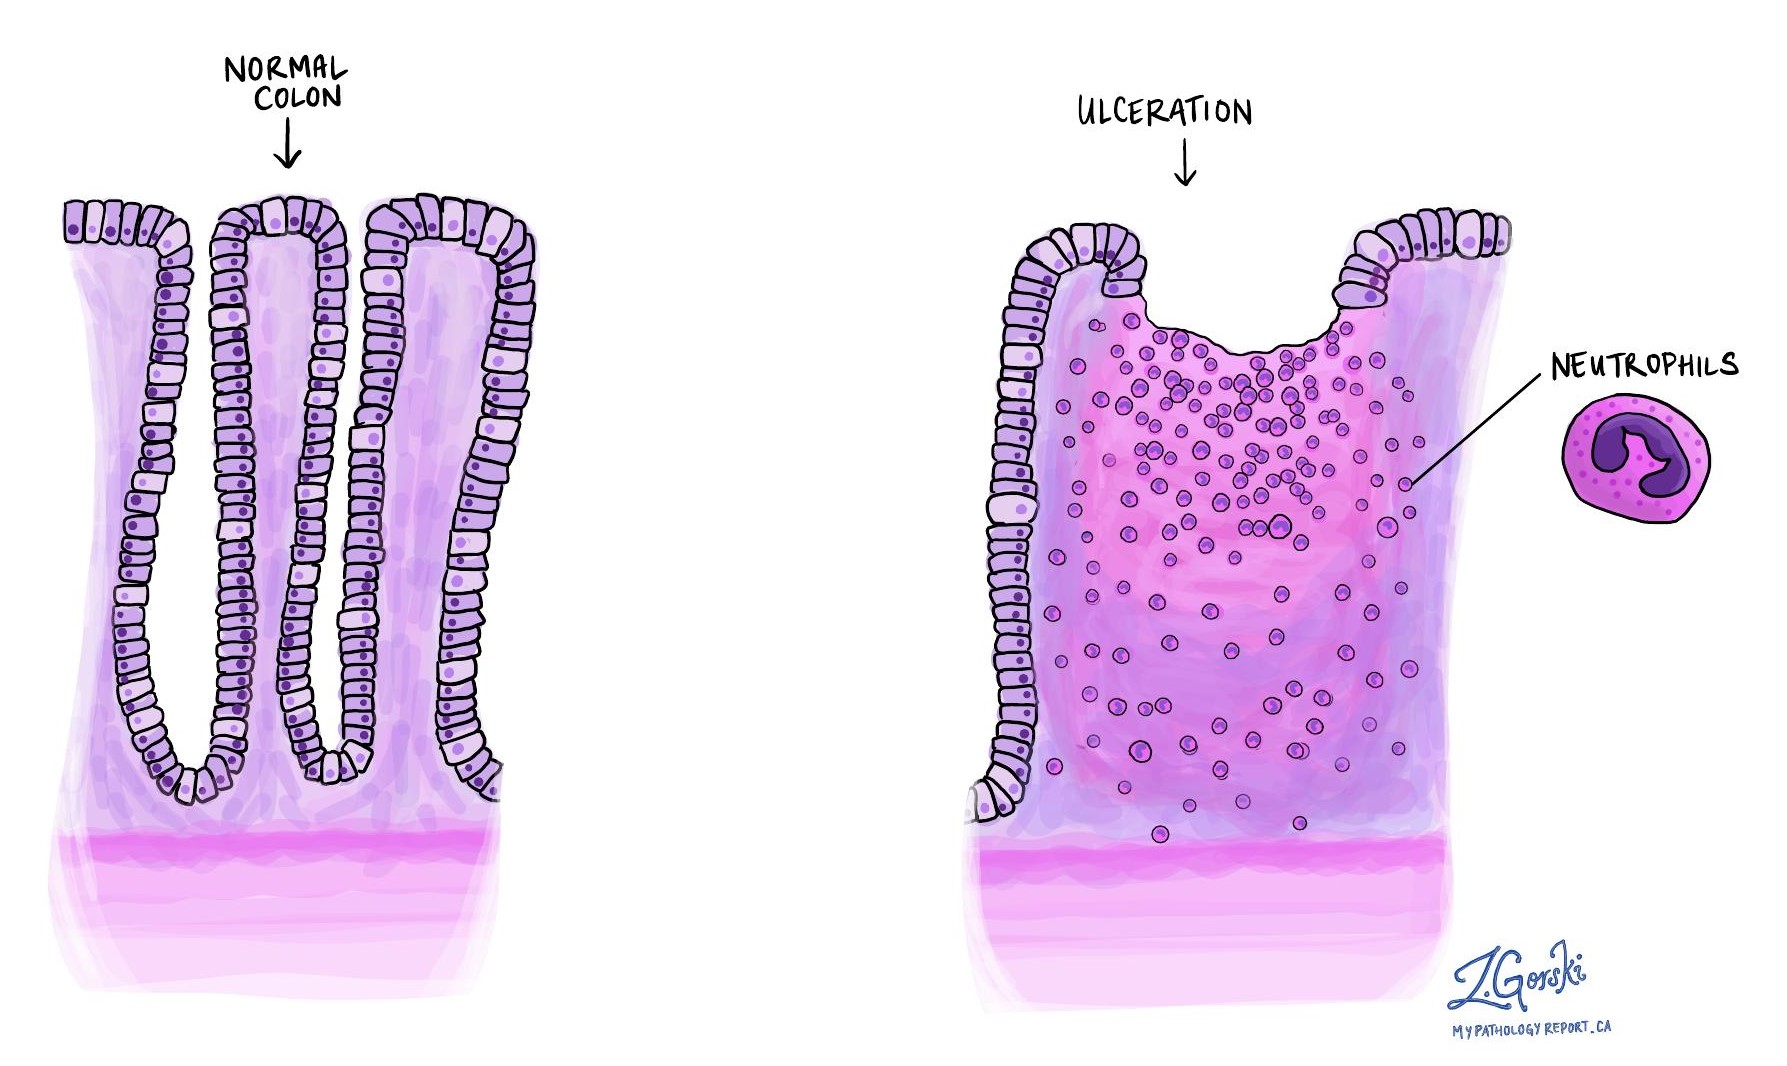 colon ulceration